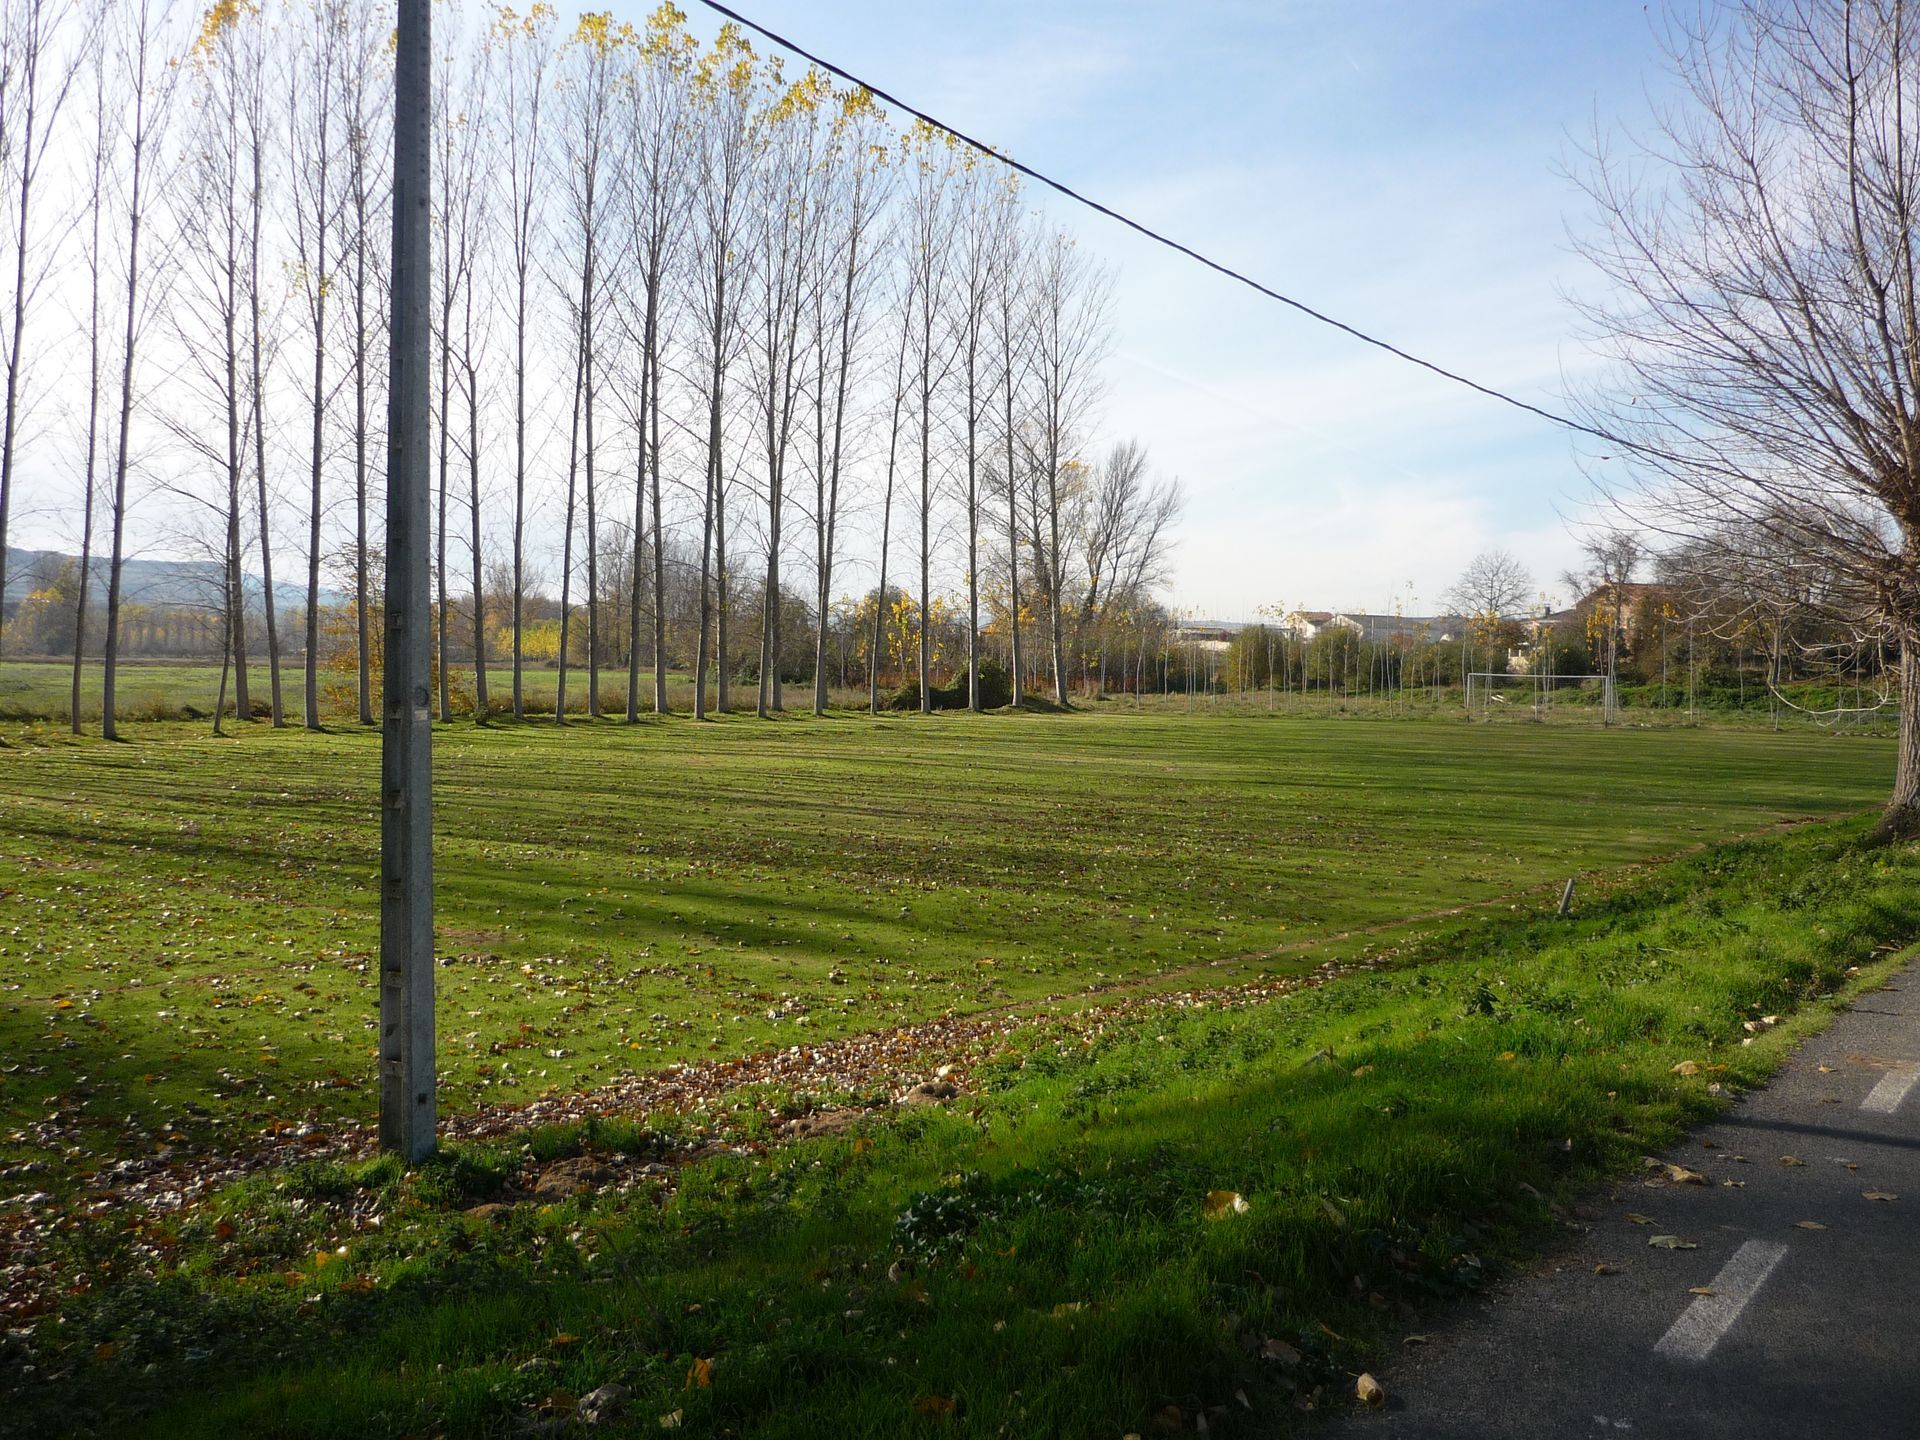 Instalaciones deportivas y parques. (Campo de Fútbol, pista polideportiva y Frontón, dos parques con mobiliario y equipamiento infantil)